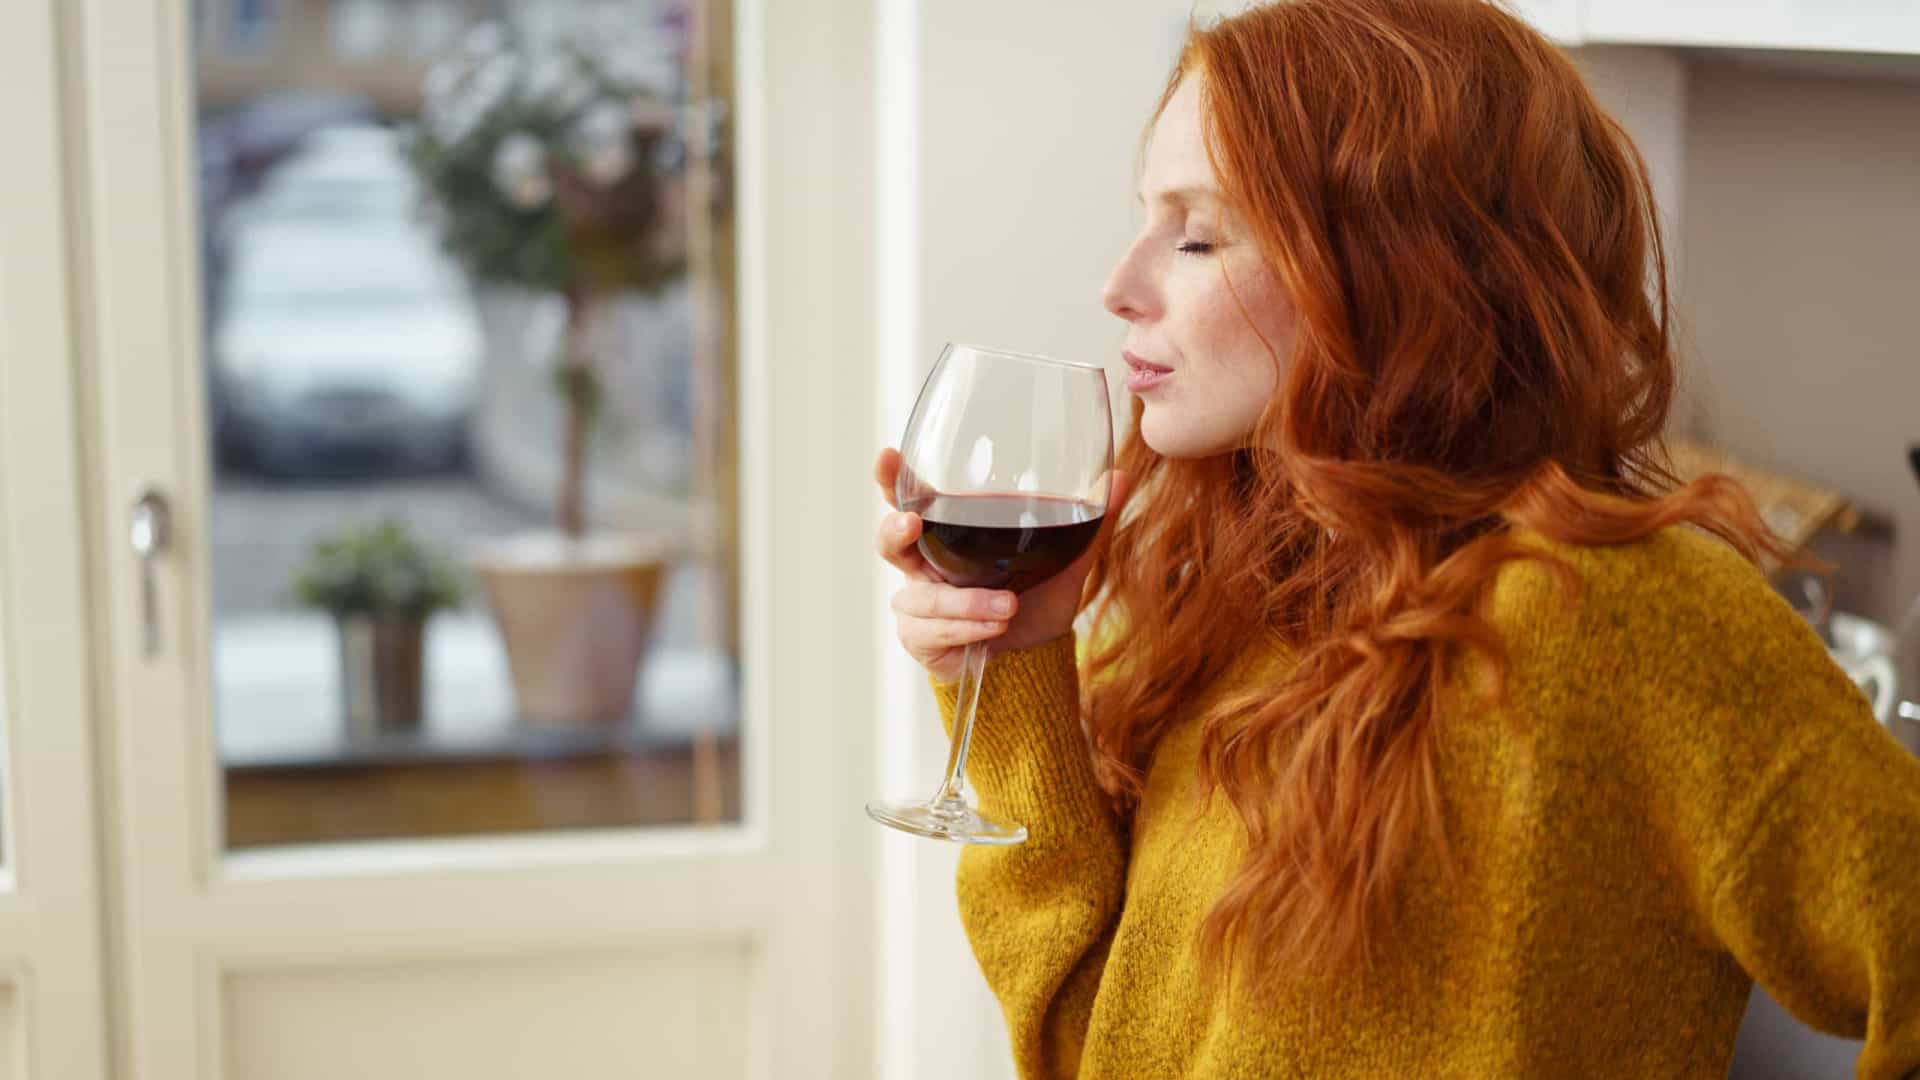 Beber vinho às refeições reduz risco de doença ‘silenciosa’ e assassina